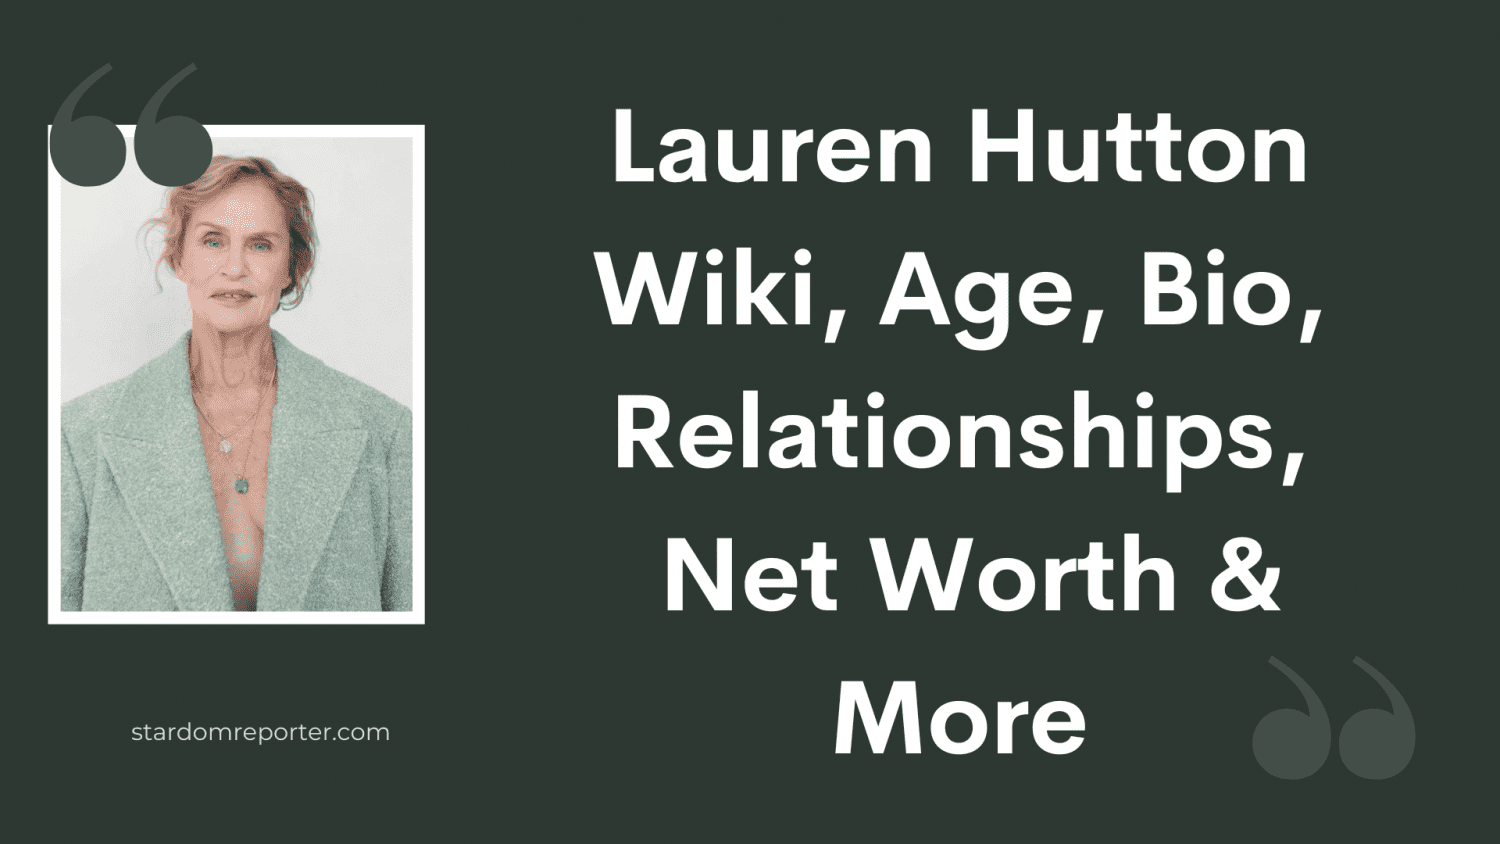 Lauren Hutton Wiki, Age, Bio, Relationships, Net Worth & More - 43